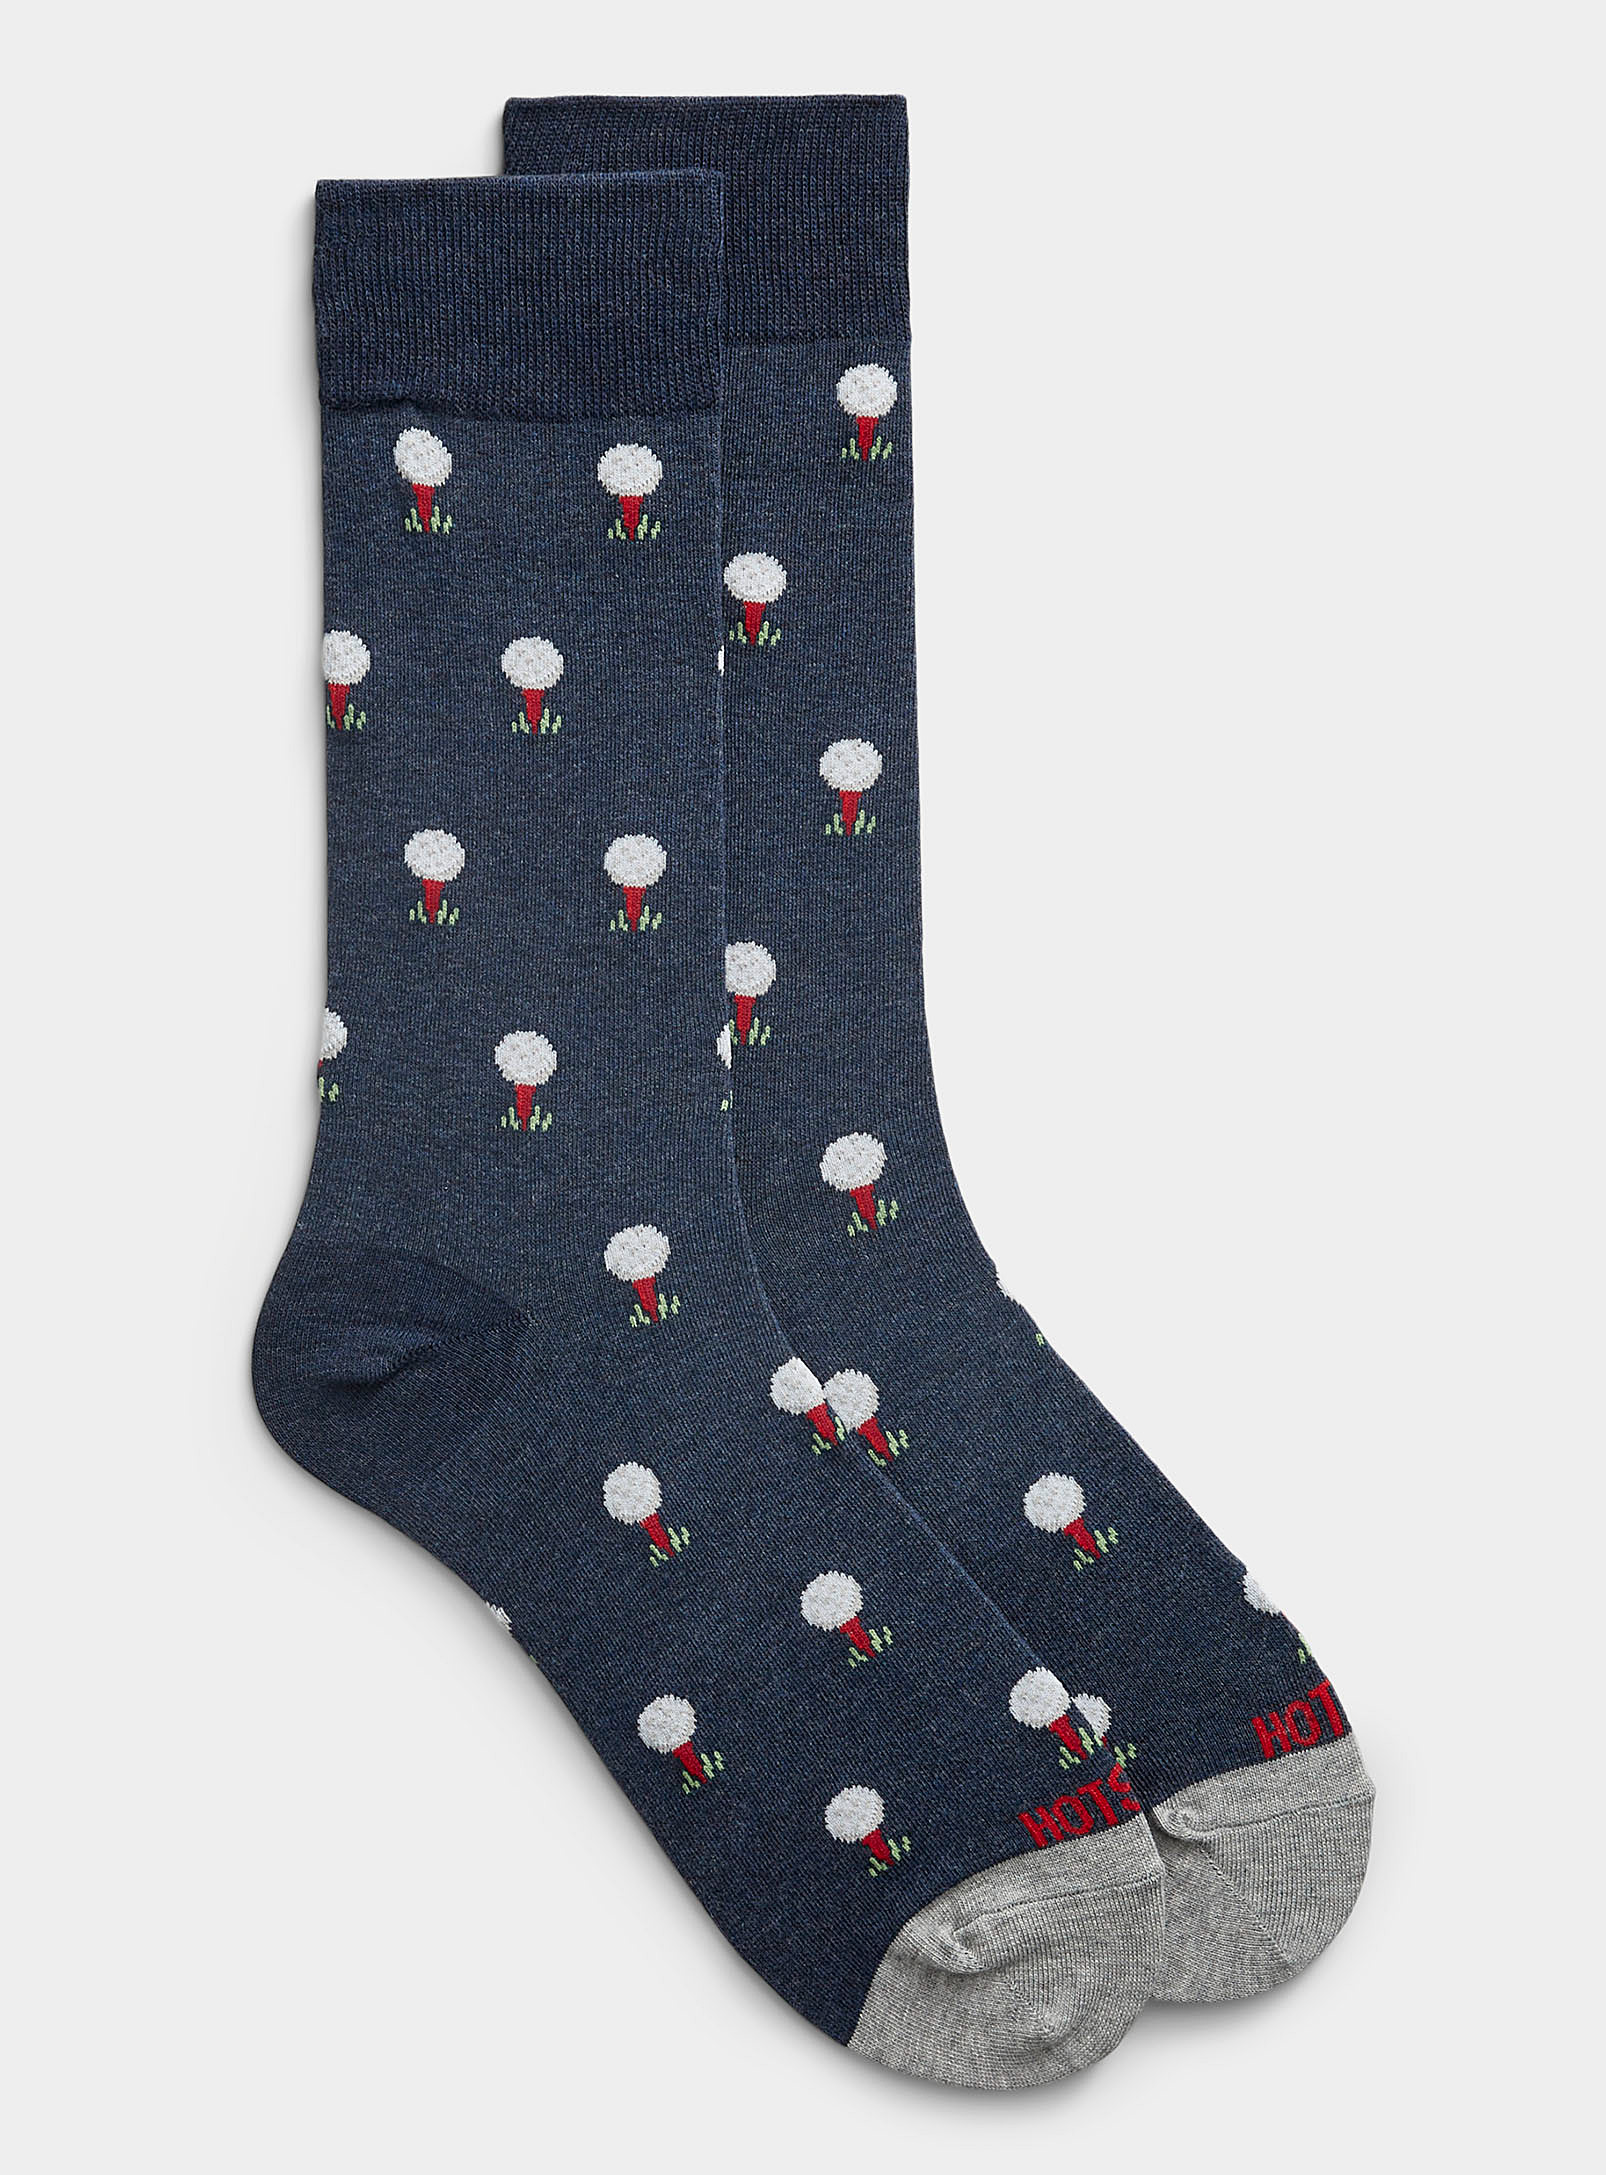 Hot Sox - Men's Golf sock